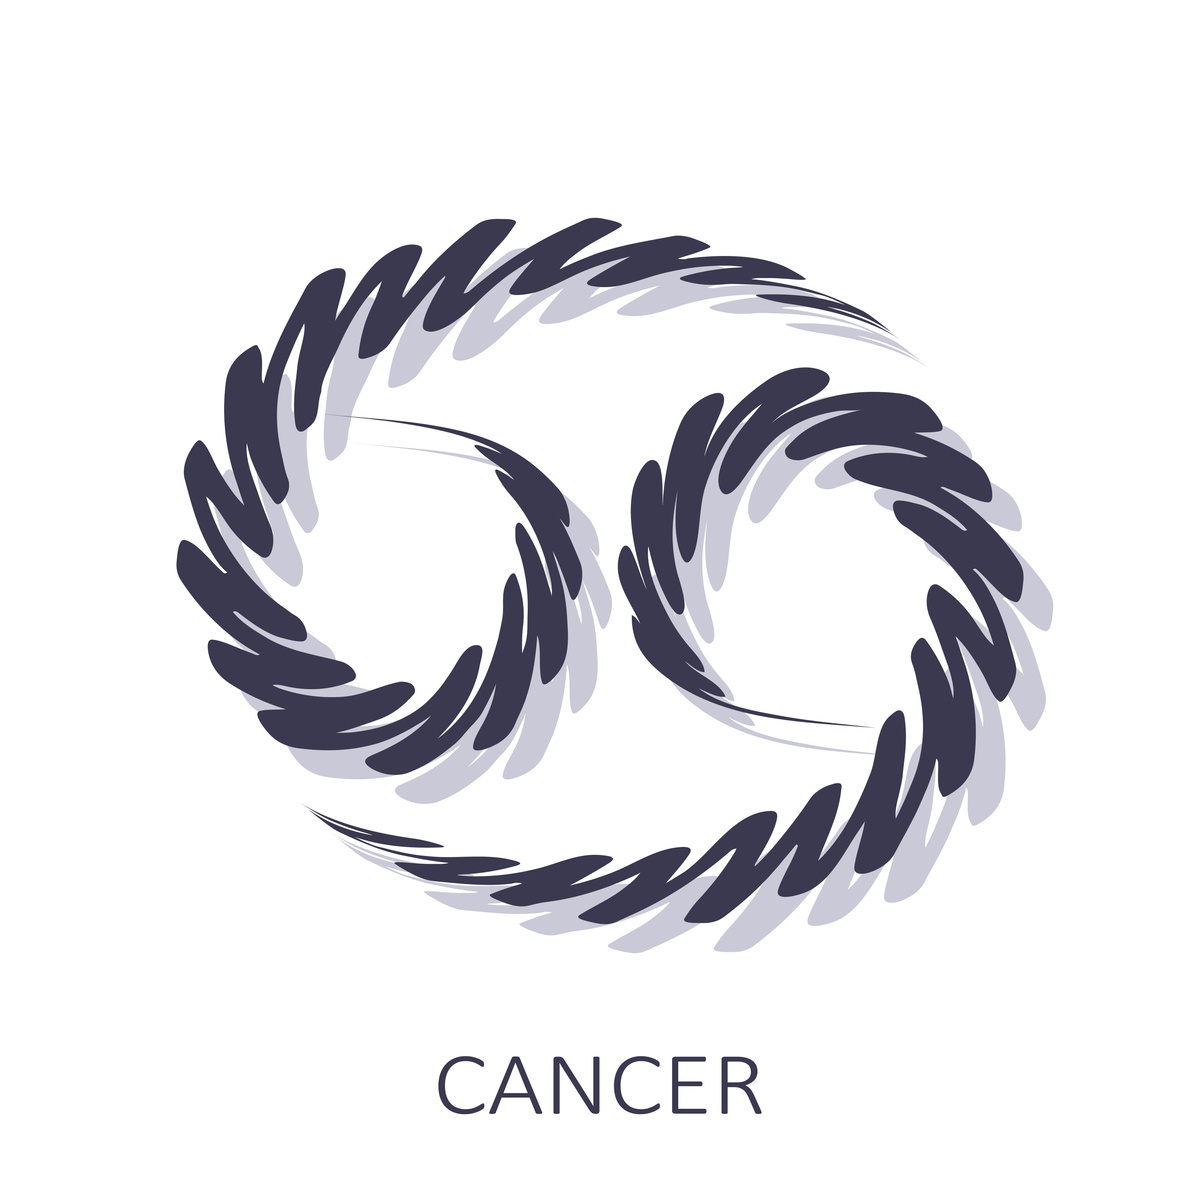 Ilustração do símbolo do signo de câncer